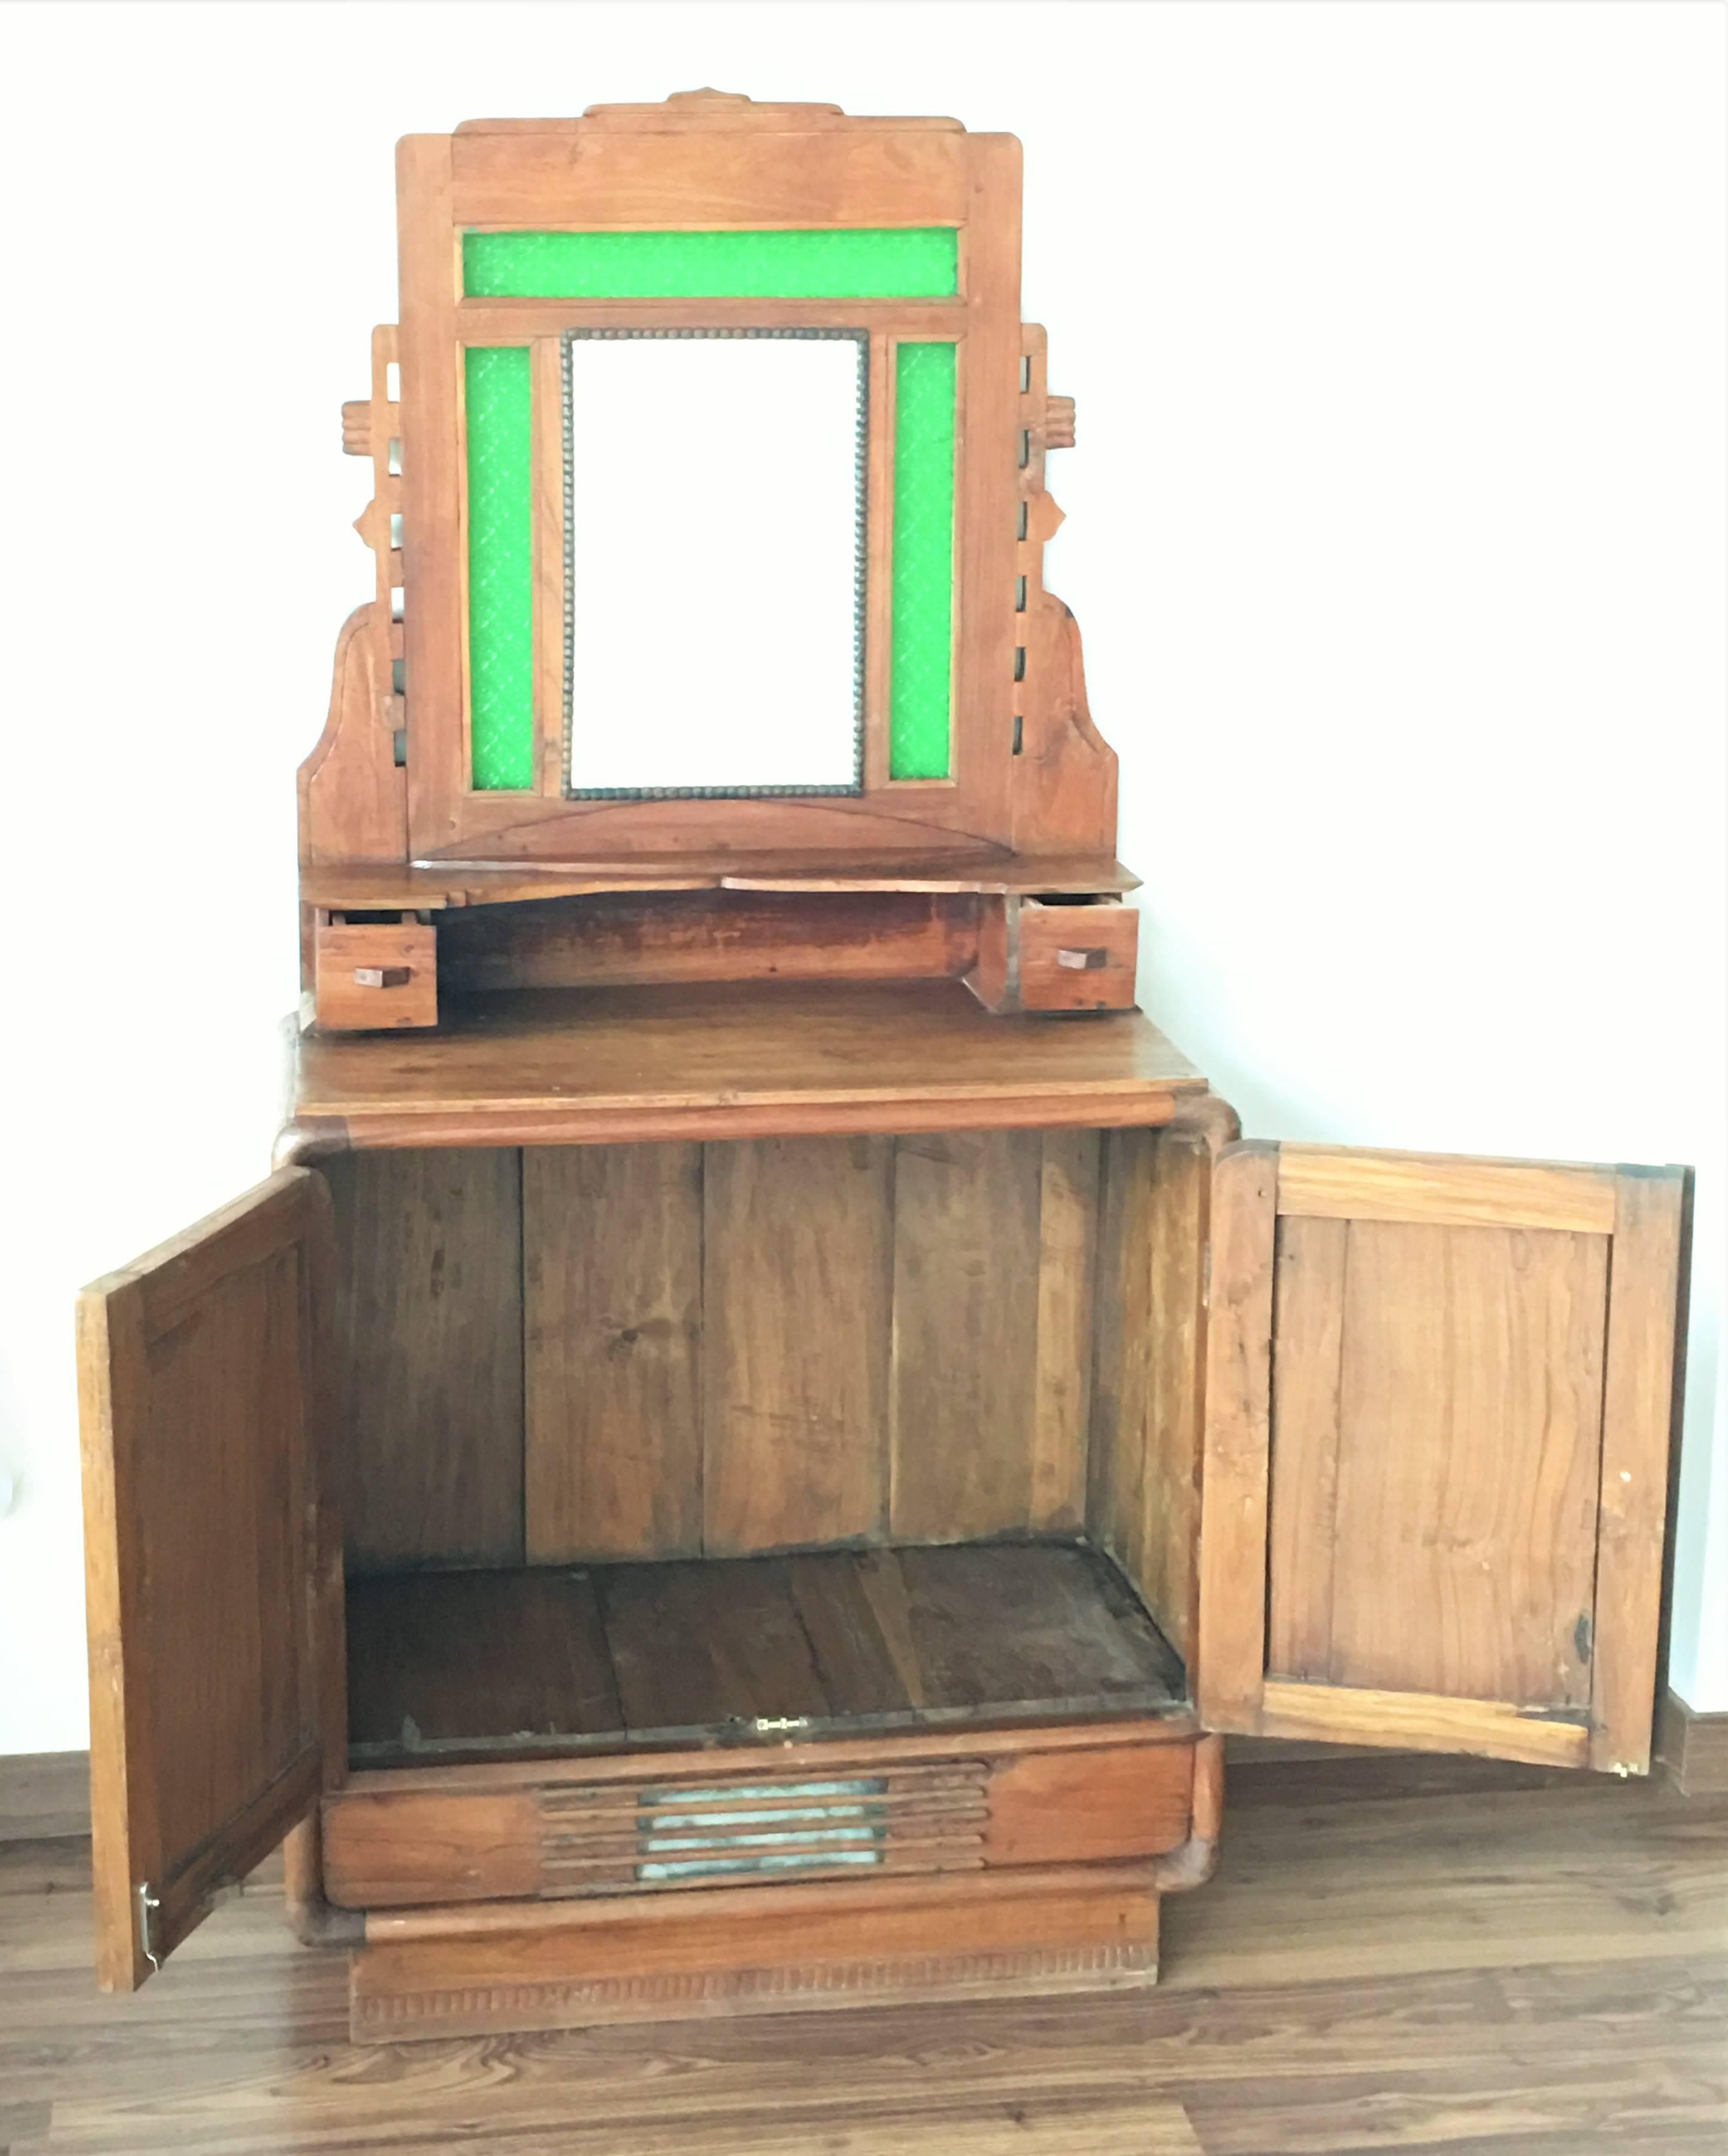 Sideboard mit Spiegel und original grünem Glas.
